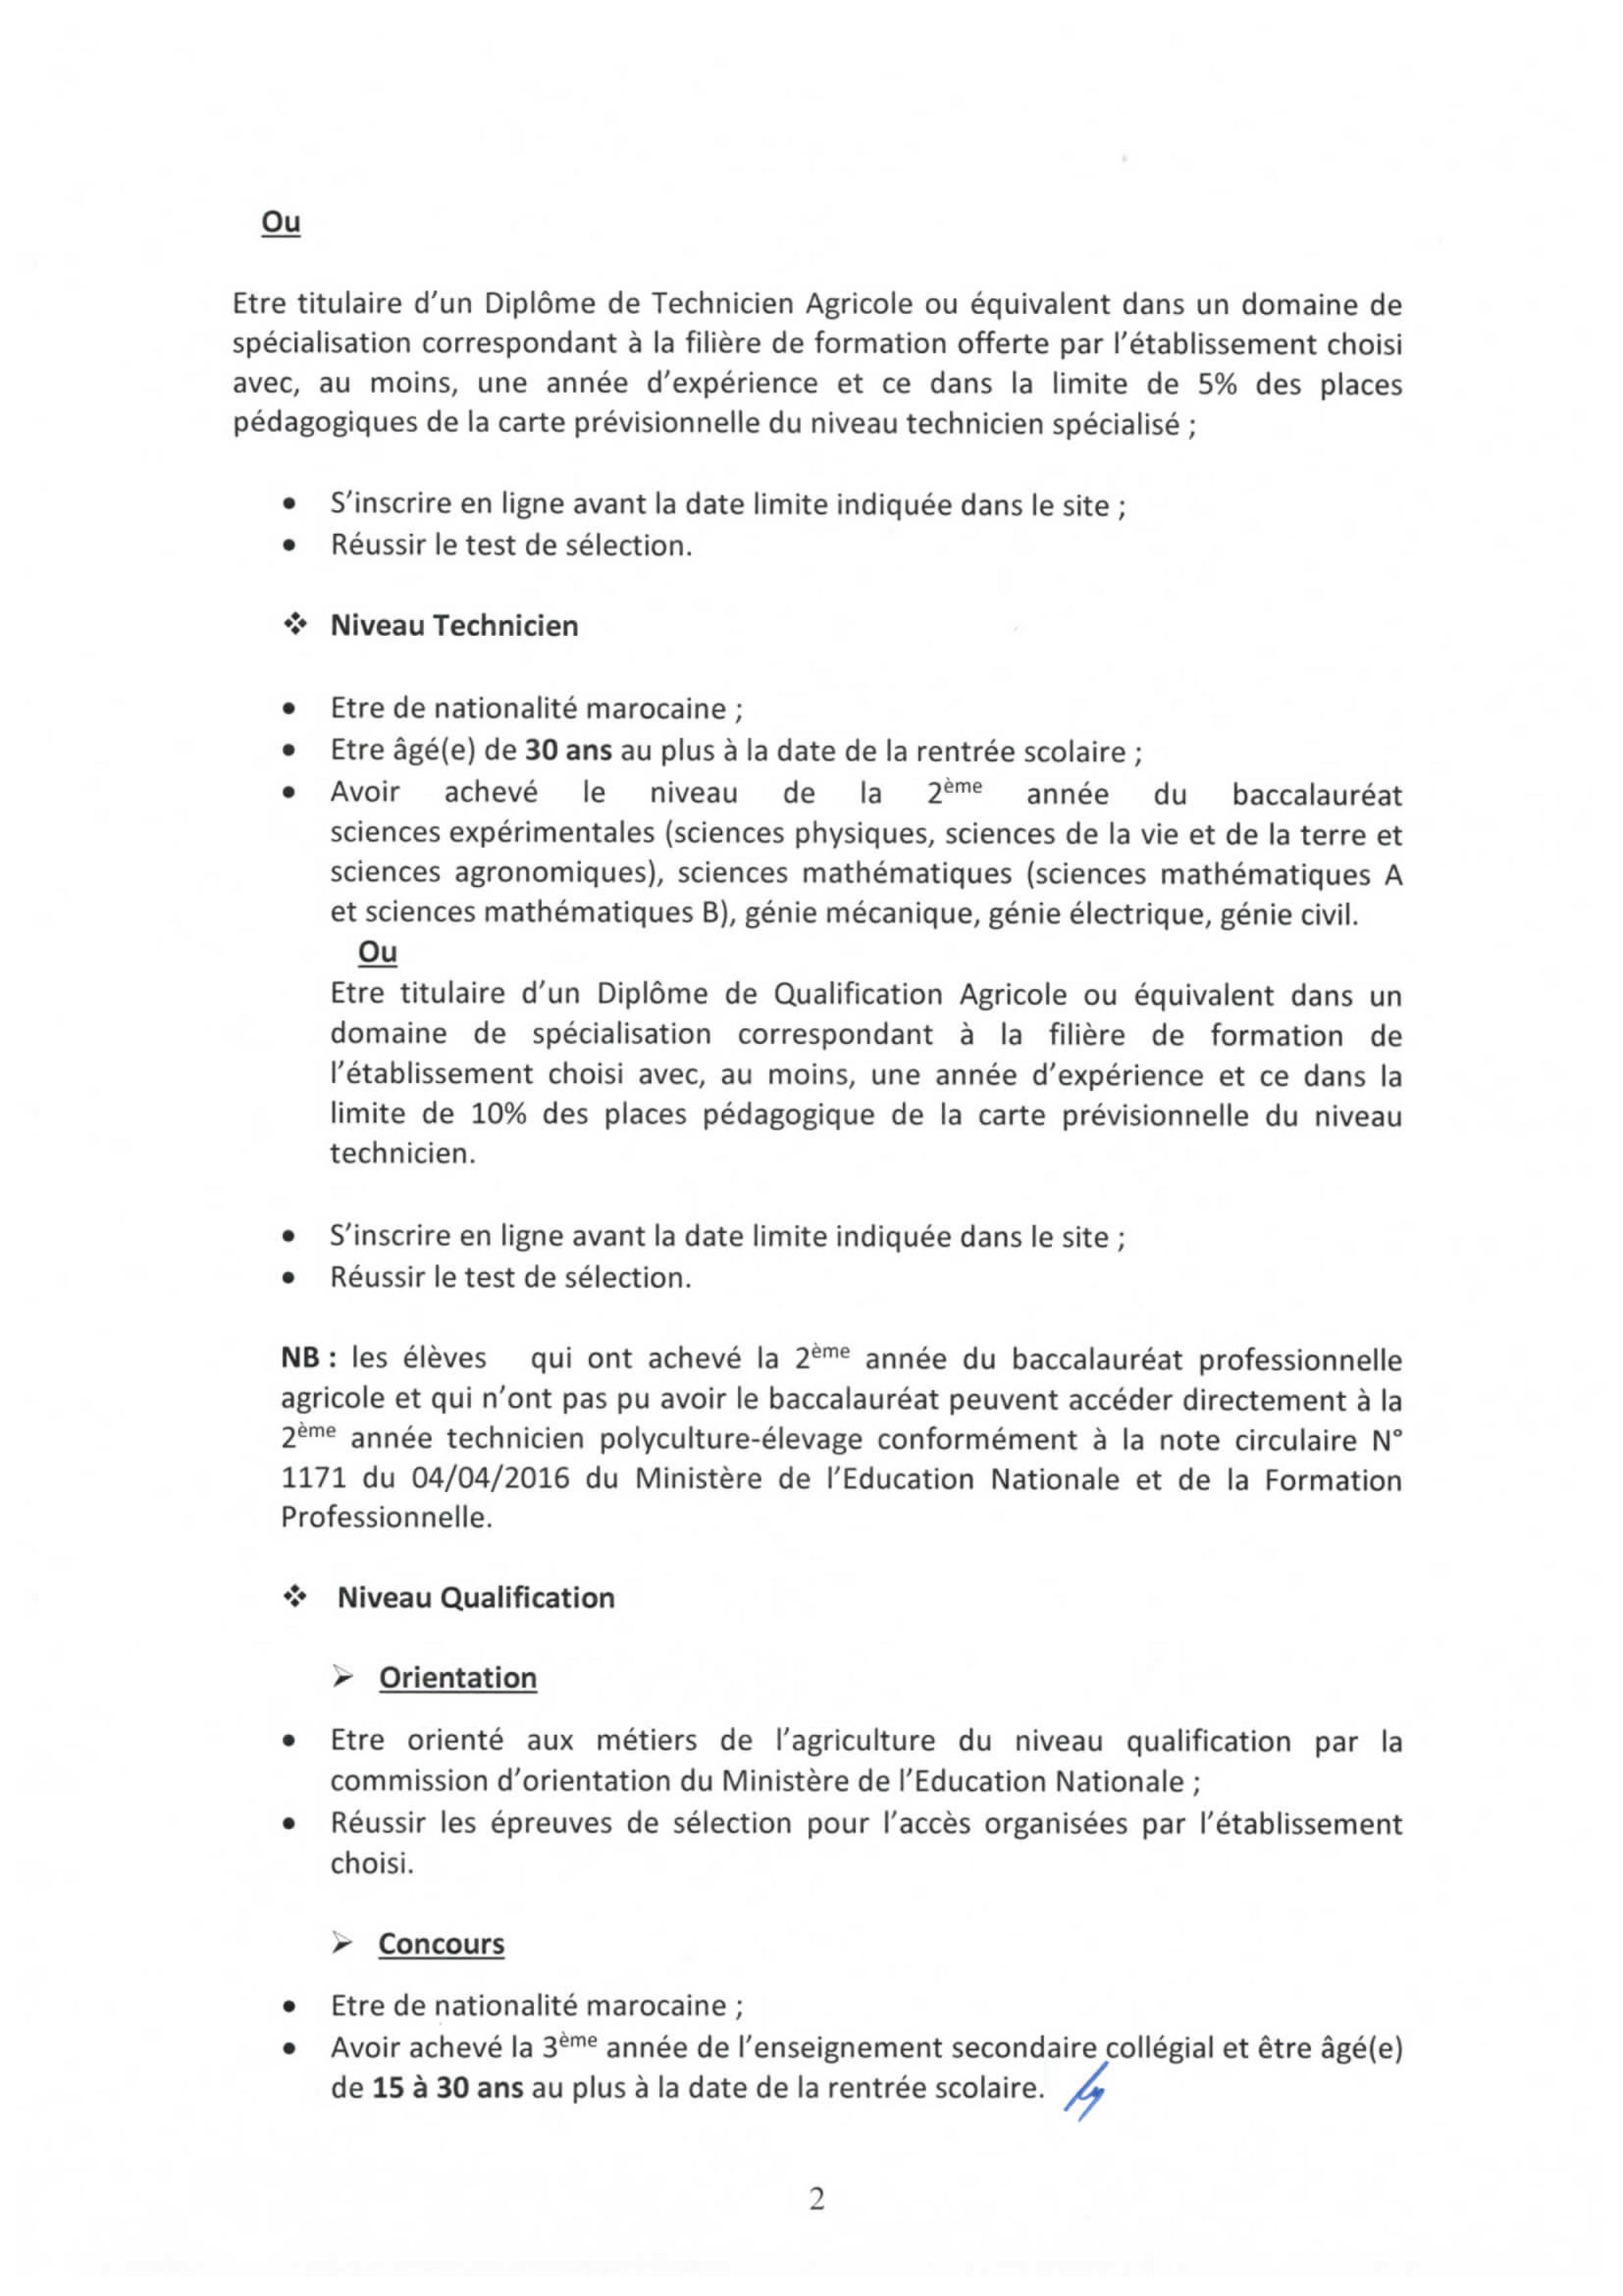 مذكرة الترشيح لجميع مستويات مؤسسات التكوين المهني الفلاحي بالمغرب 2020